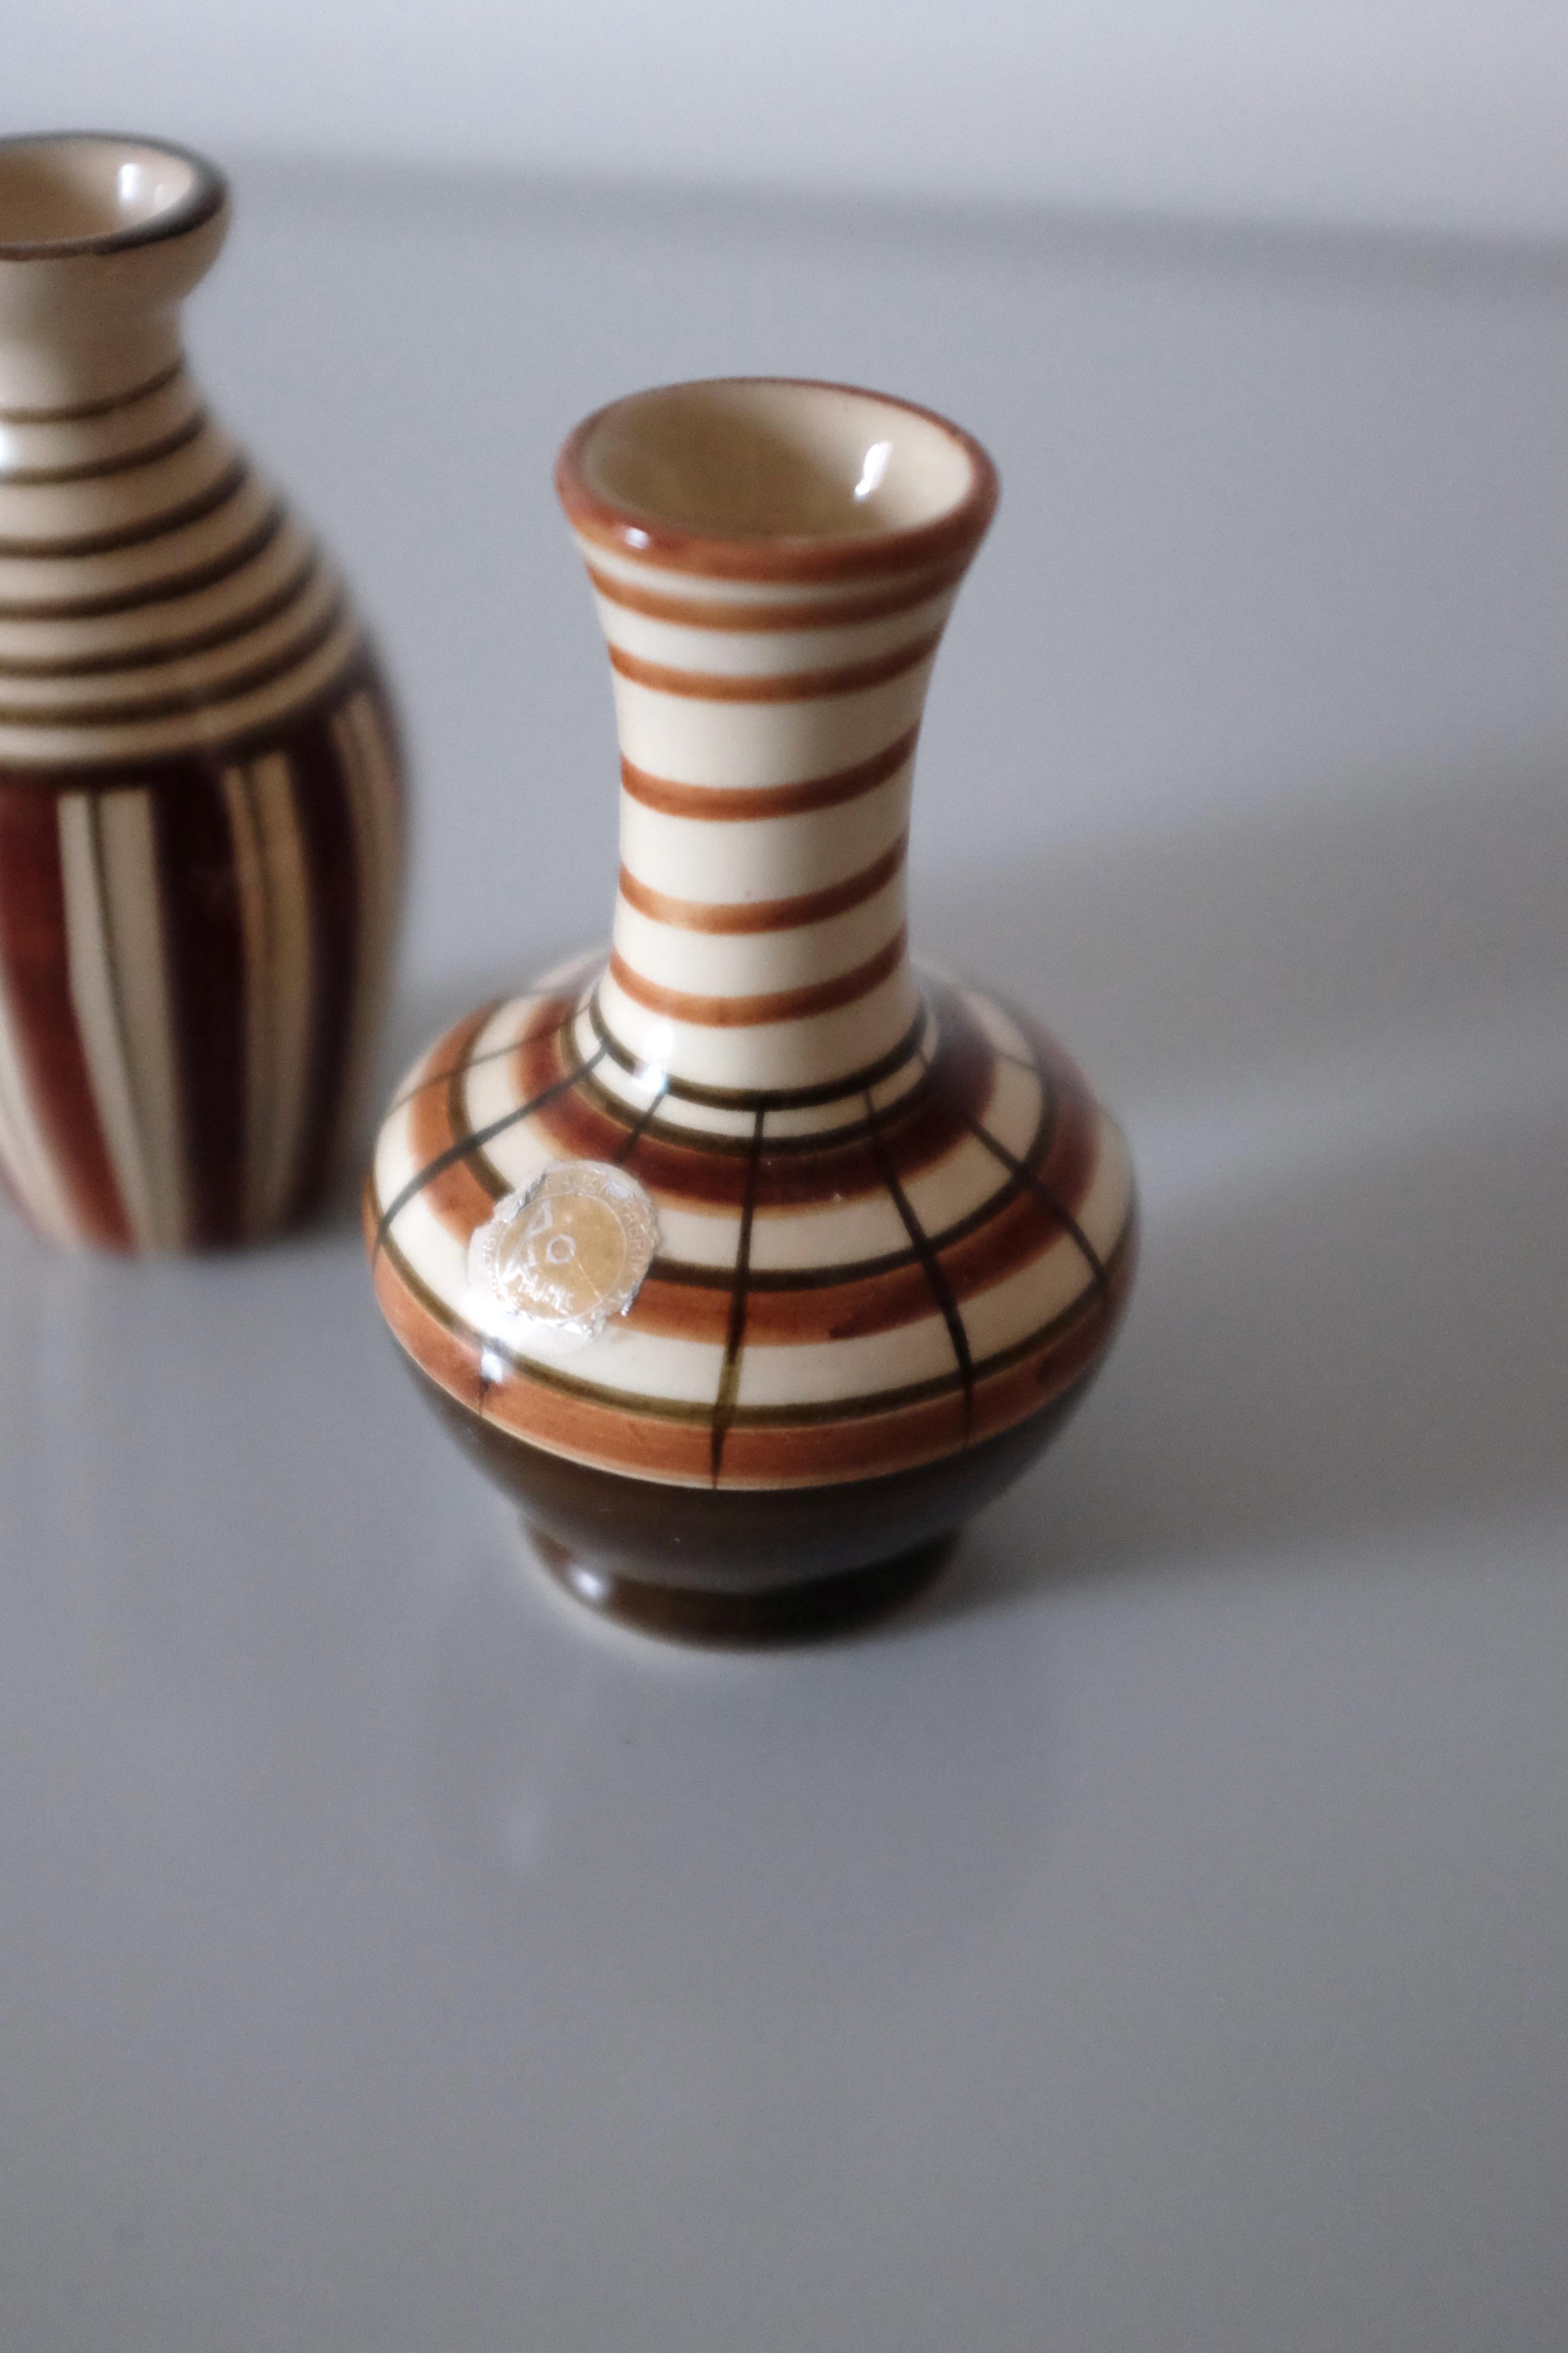 Charmante paire de miniatures en céramique réalisées par Eva Jancke-Björk pour Bo Fajans, Suède. Ils font partie d'une collection d'objets miniatures qu'Eva Jancke-Björk a créée pour Bo Fajans et qui sont typiques de sa signature, à savoir des